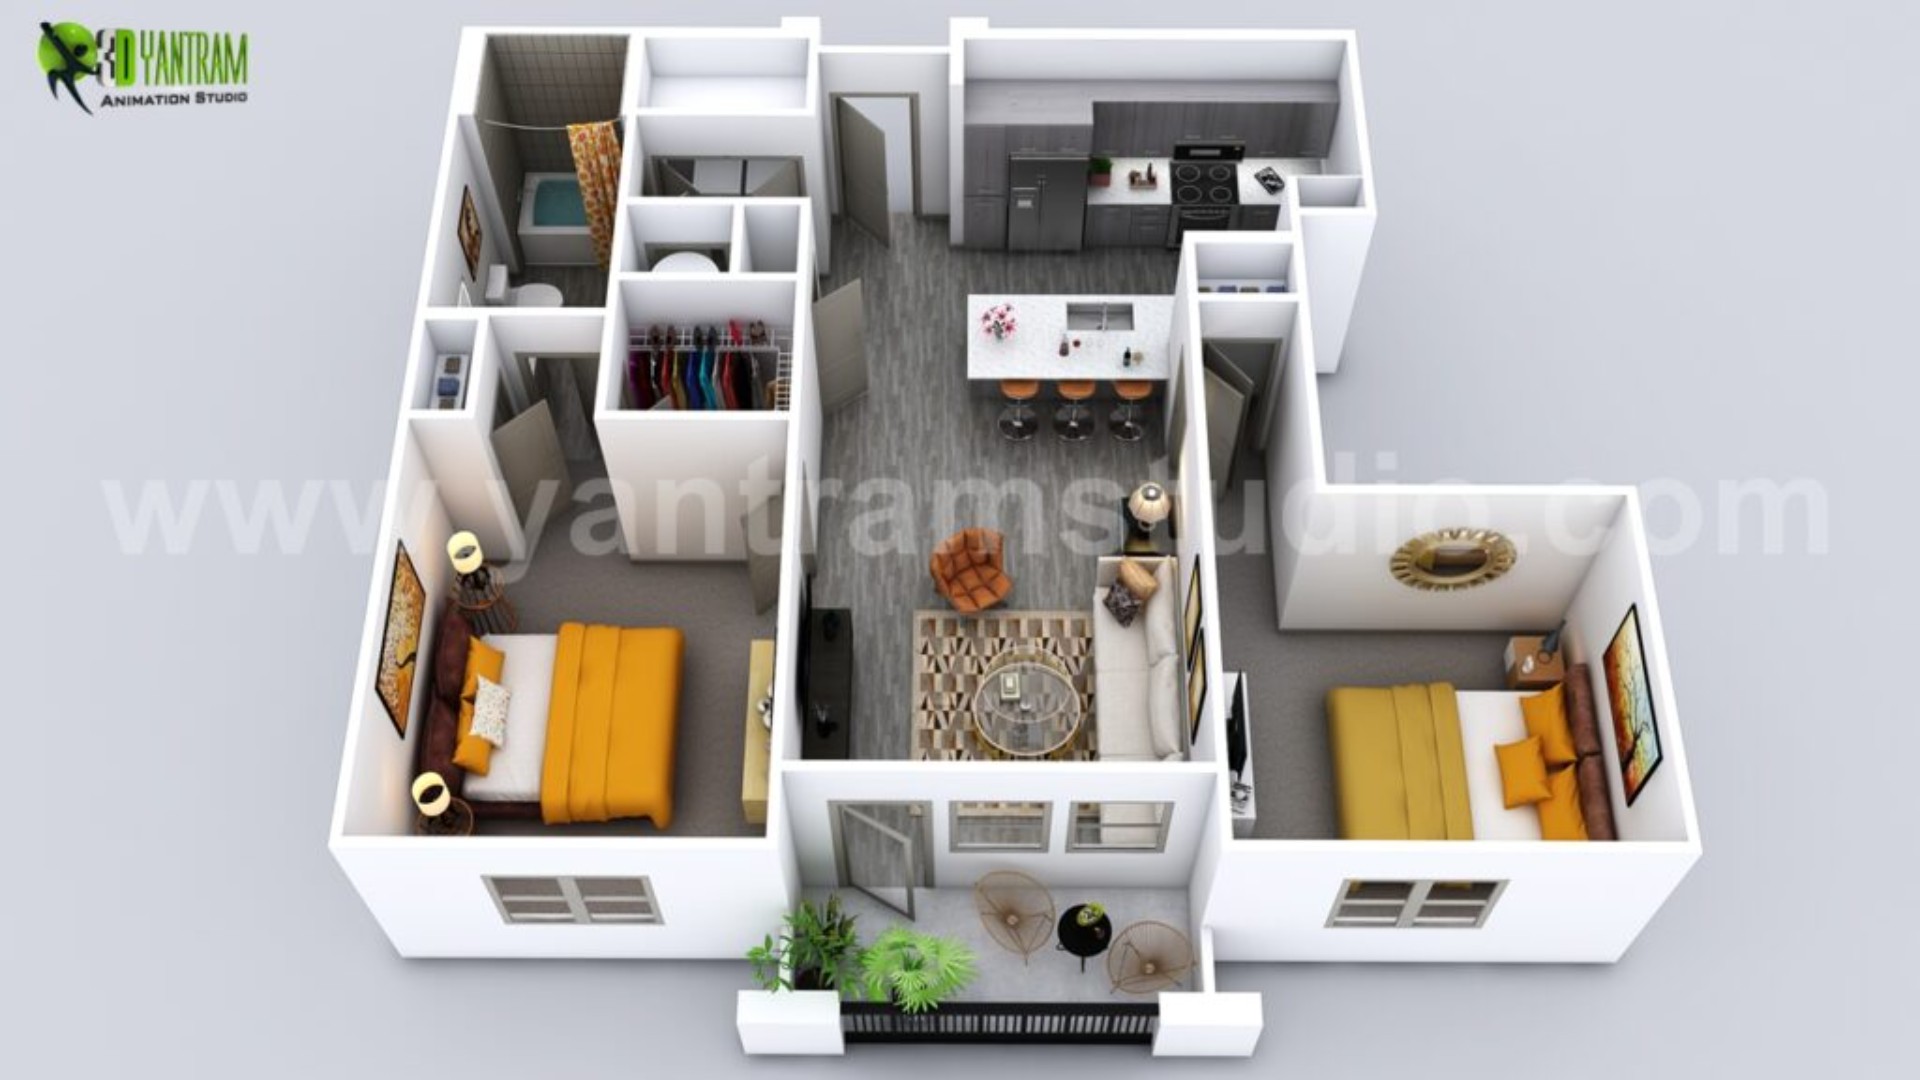 modern-attractive-3d-floor-plan-design-studio-1024x576 (1).jpg  by 3dyantramstudio